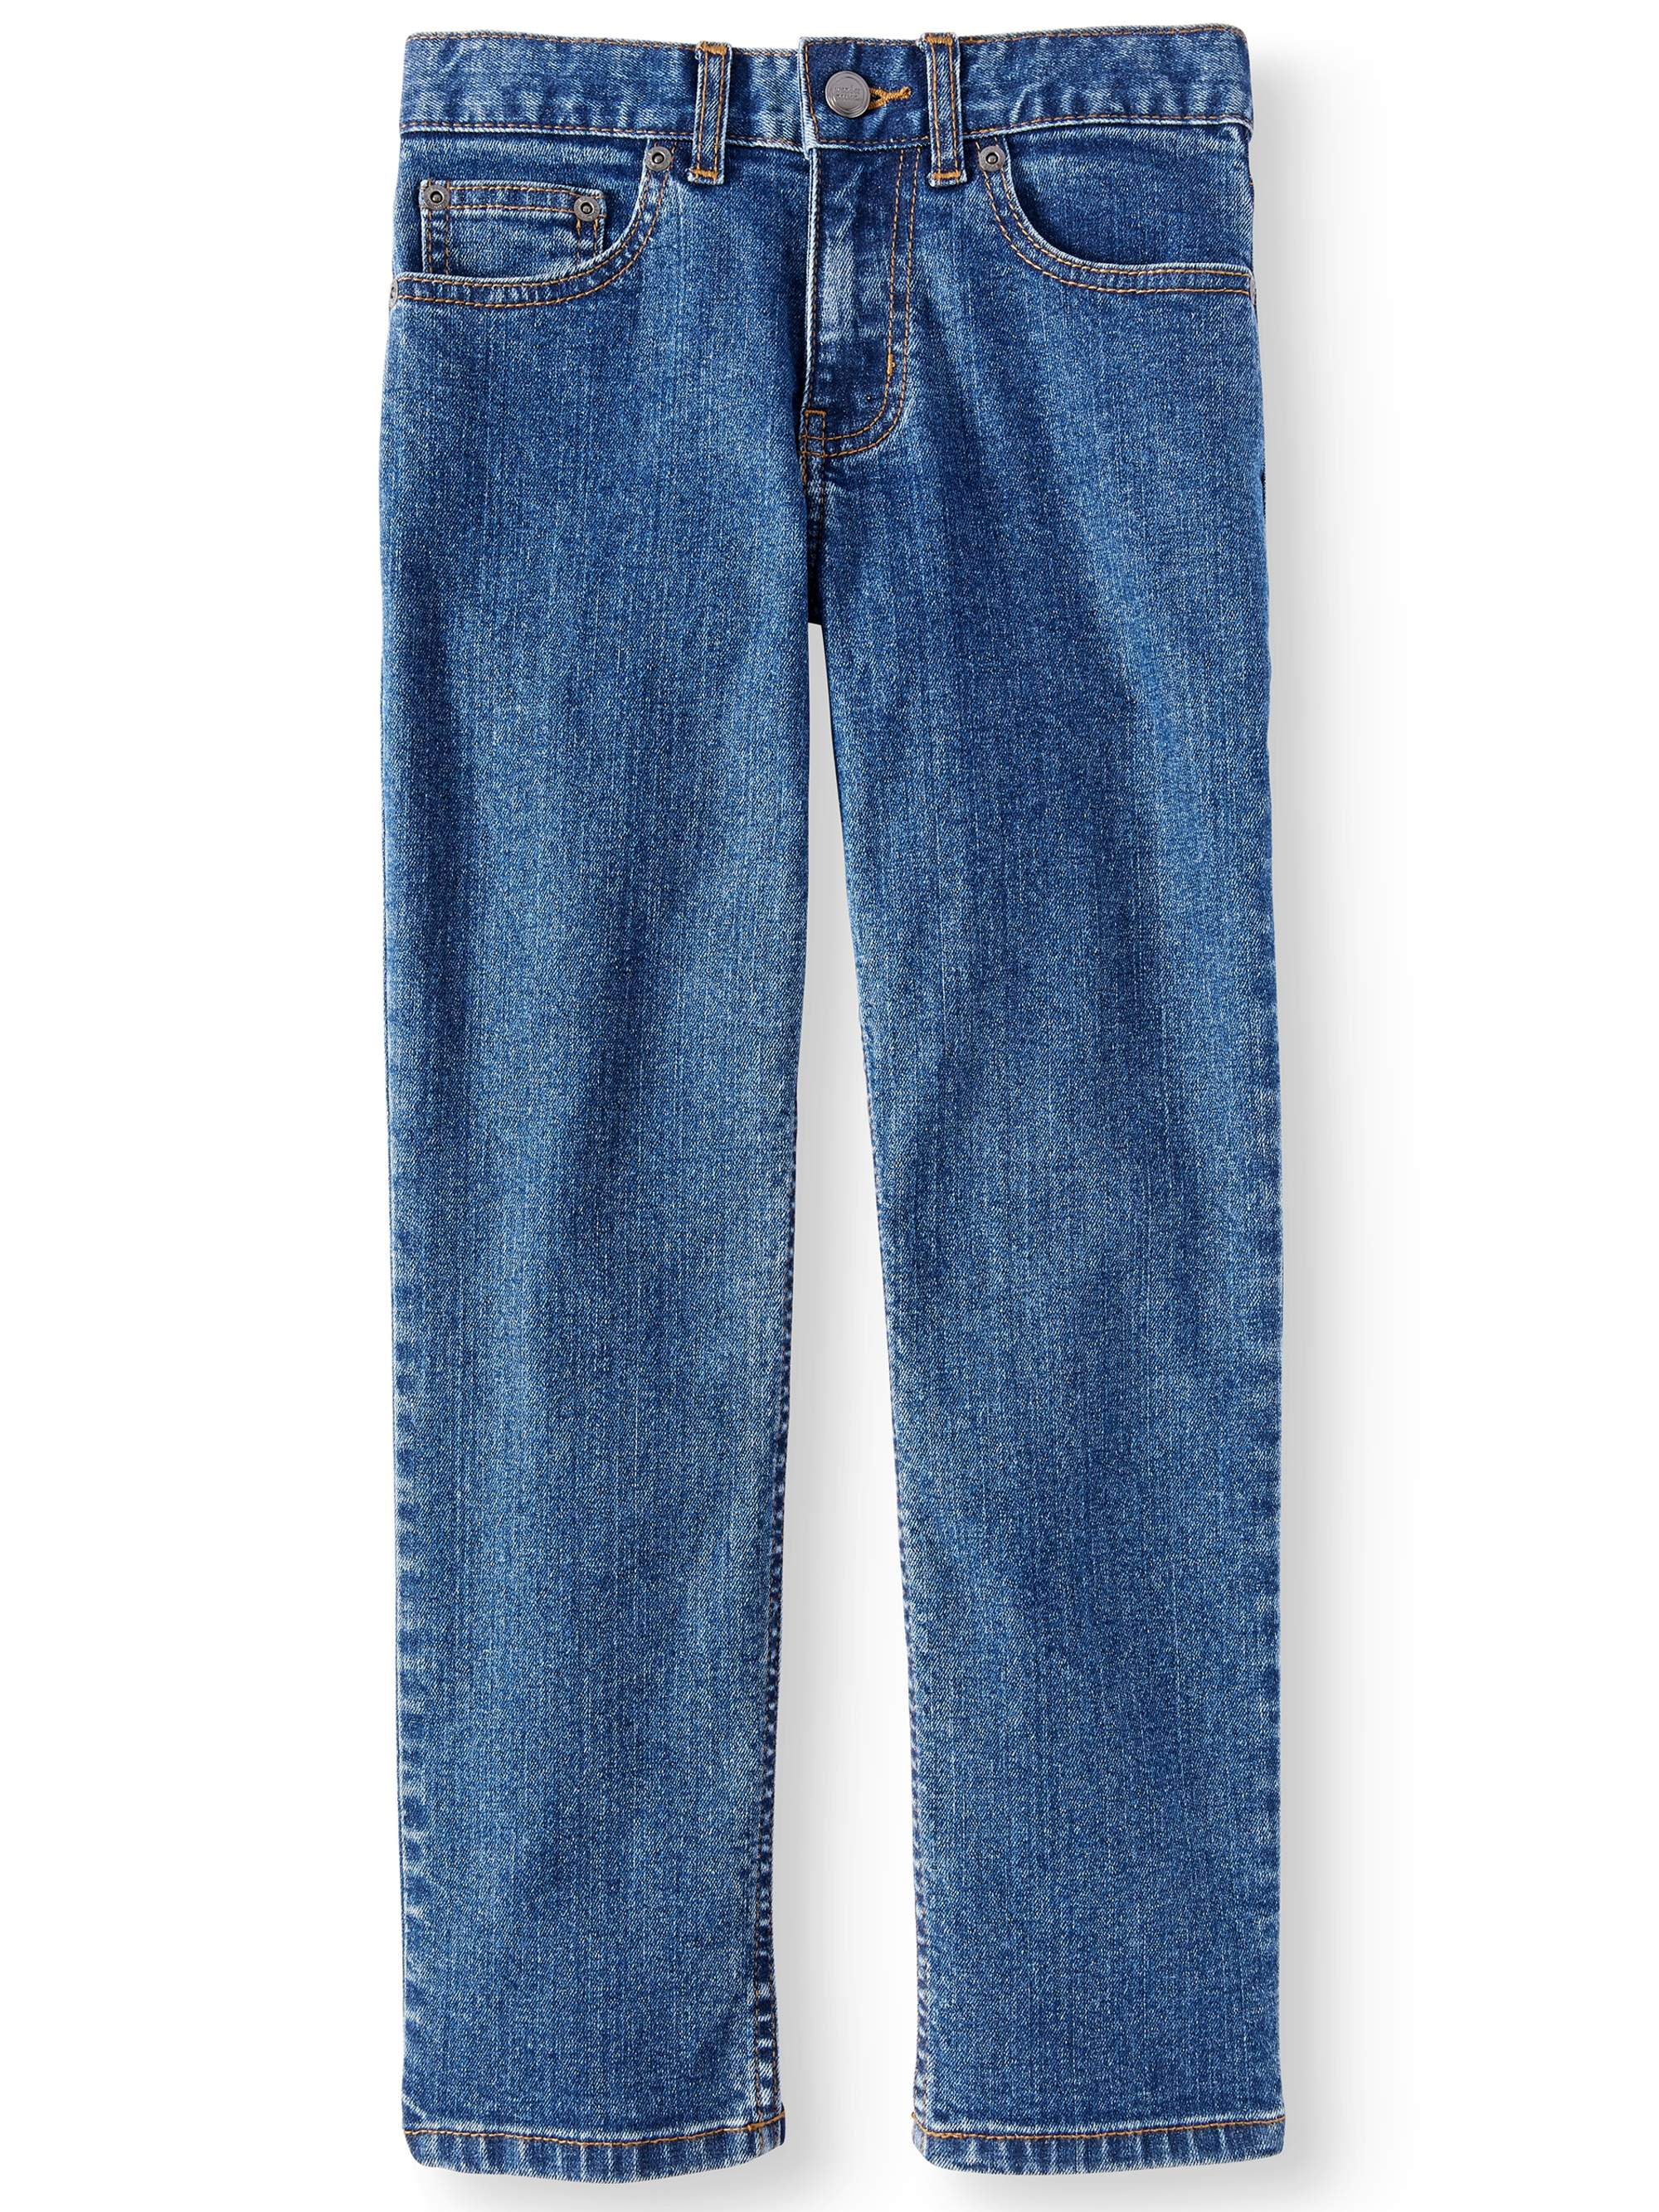 cheap jeans size 16